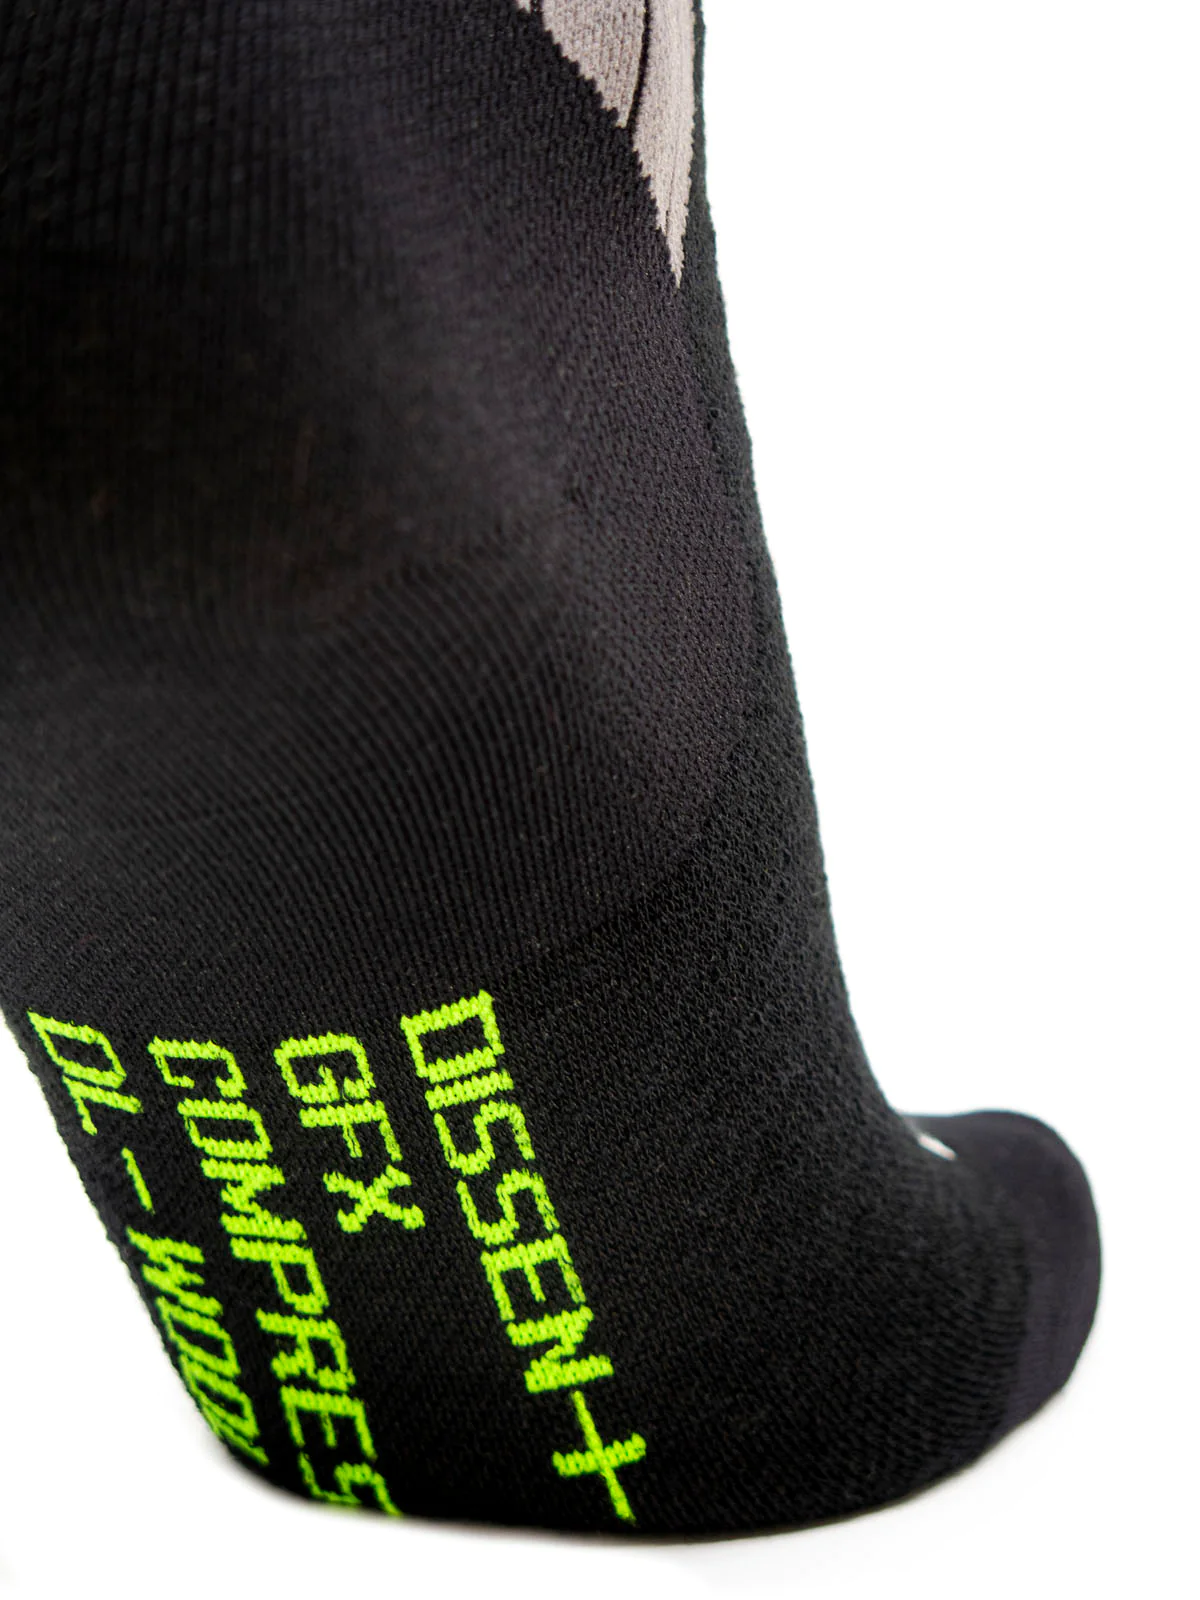 Dissent Dissent Ski GFX DL-Wool Compression Sock